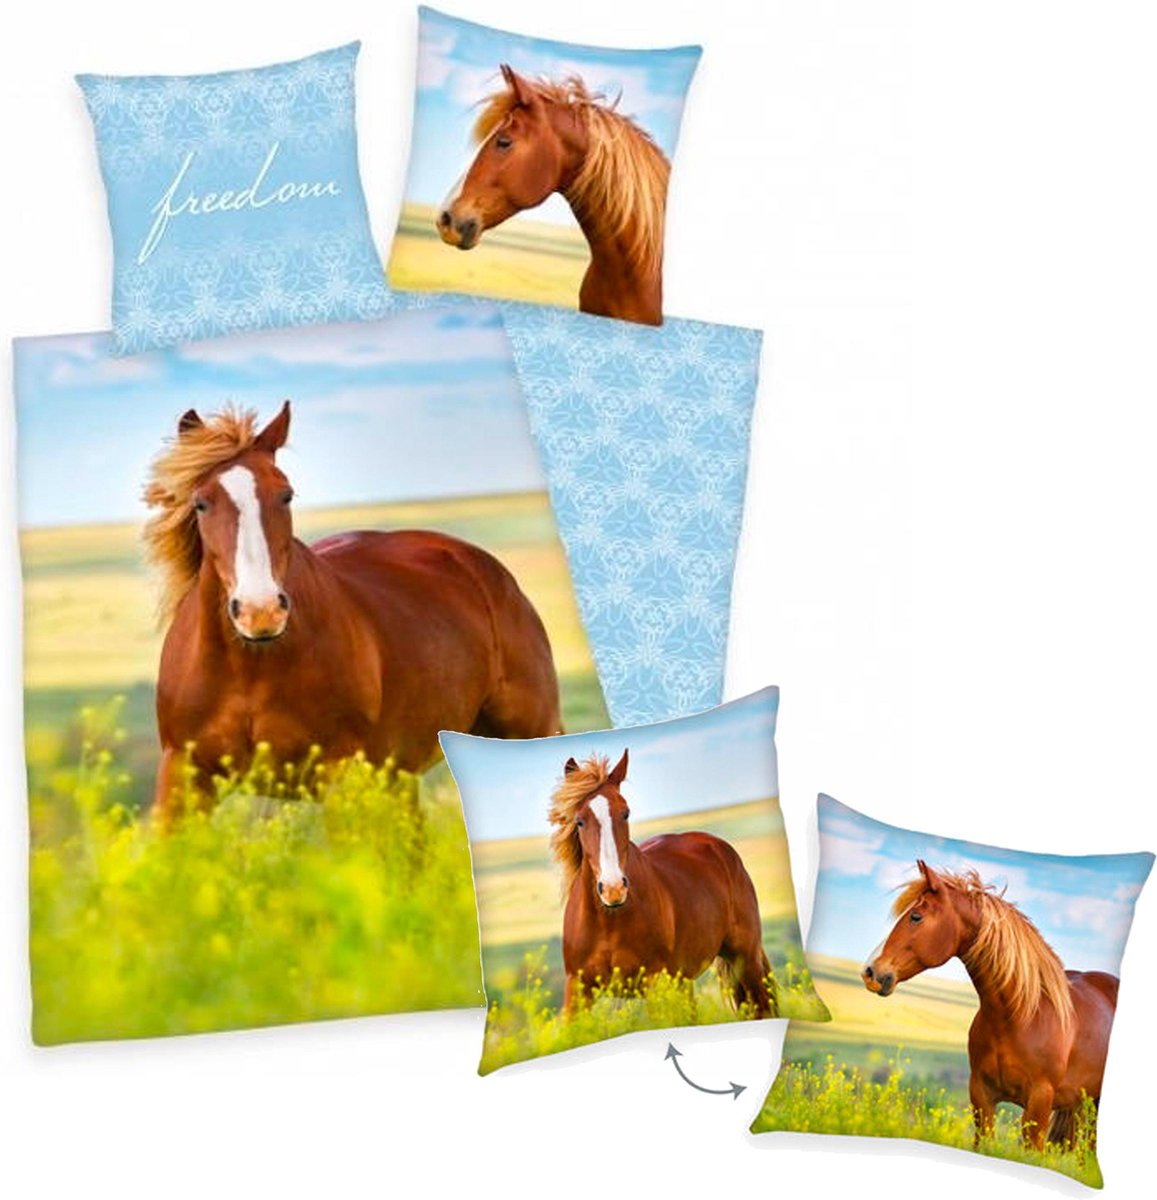 Dekbedovertrek Paard, 140 x 200 cm, Paard in bloemenwei , Dekbed eenpersoons - incl. sierkussen bruin paard 40x40 cm